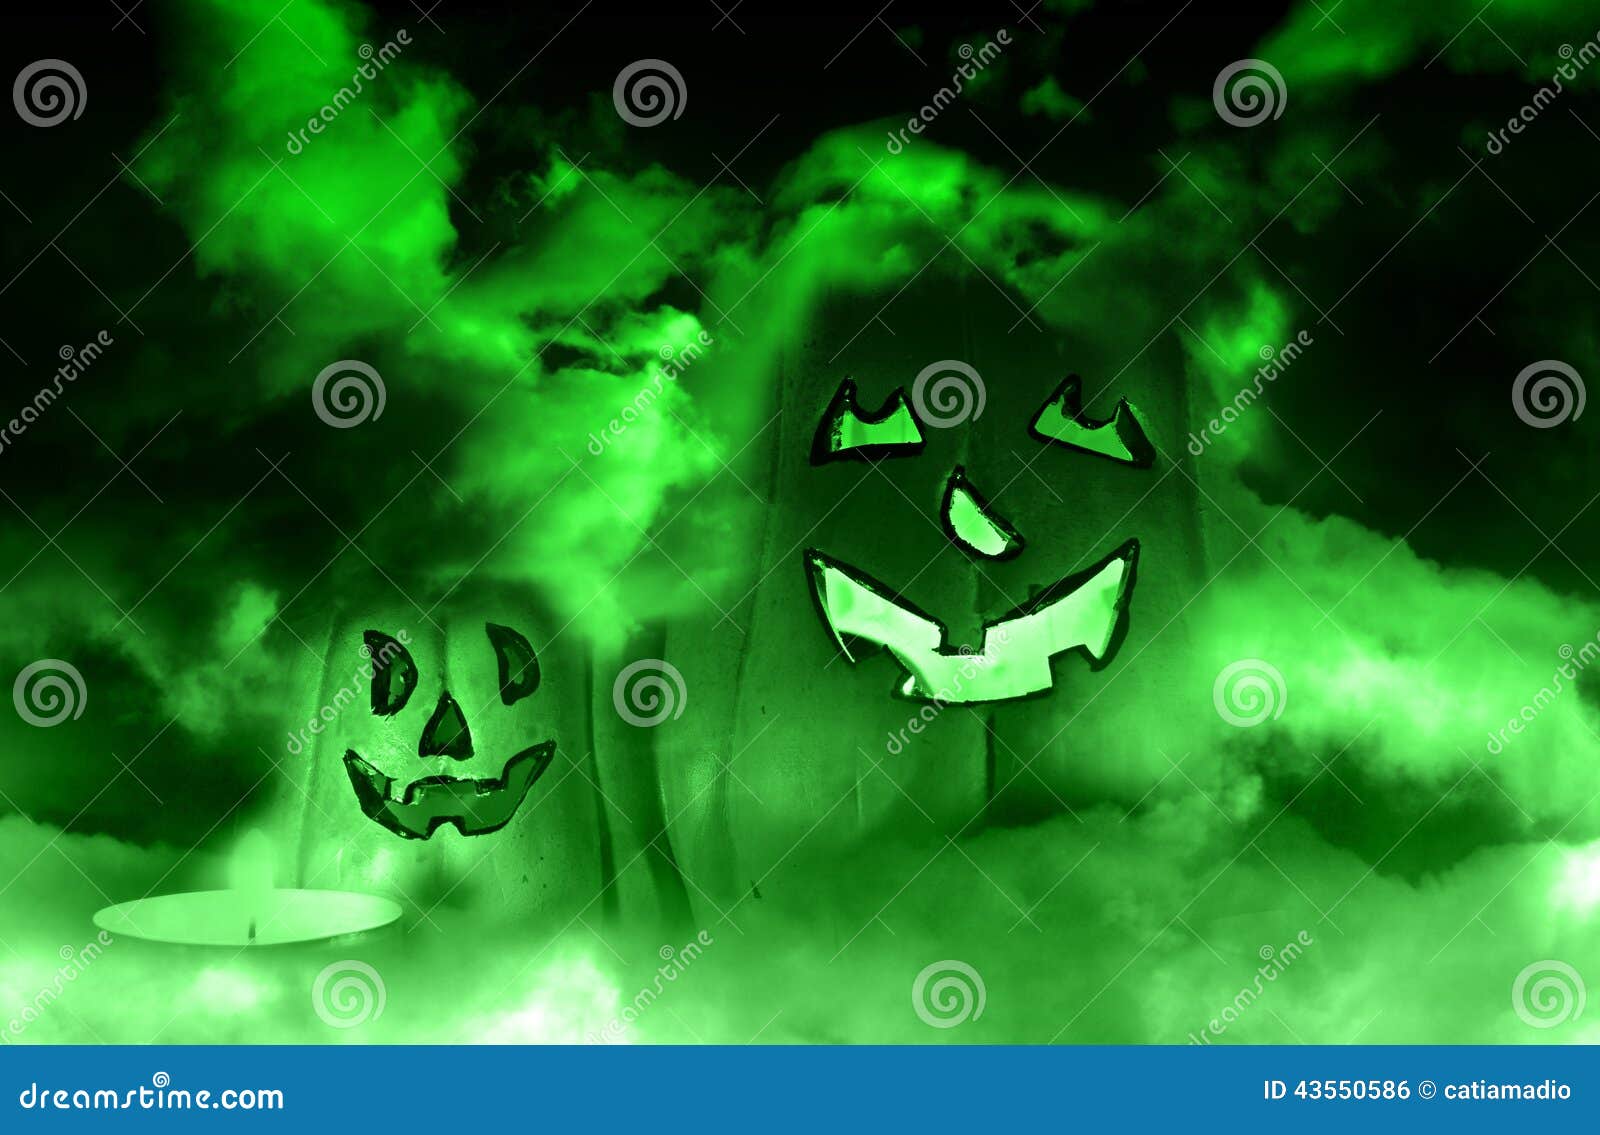 spooky-green-pumpkin-scary-halloween-background-43550586.jpg